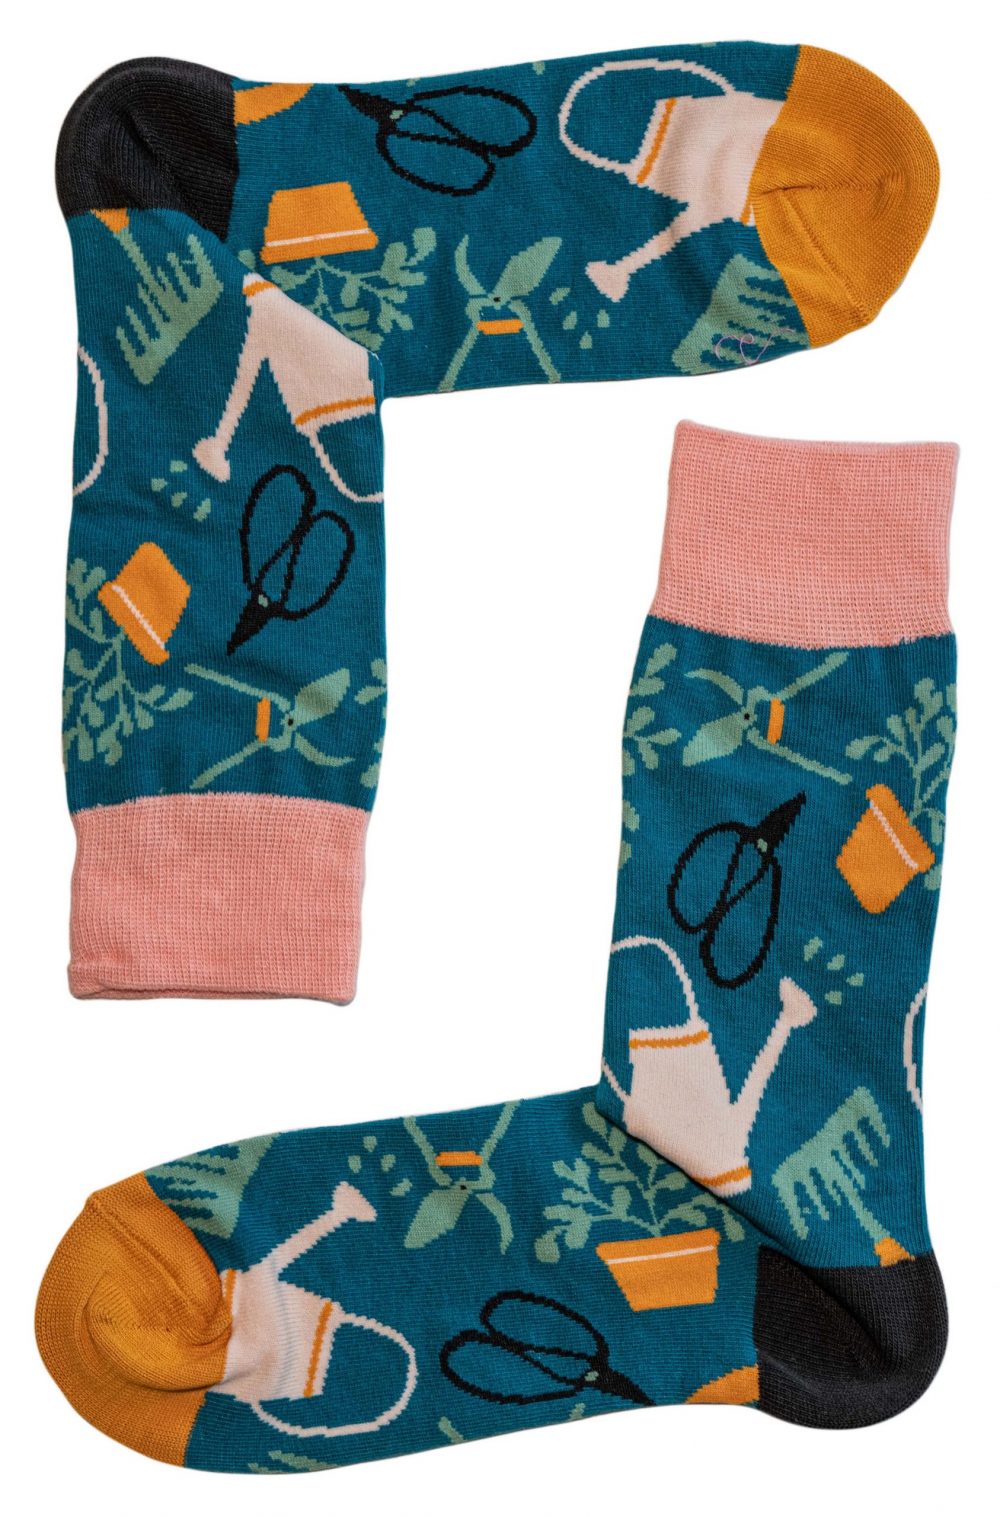 X'mas Gift Box C (Combed cotton novelty socks)